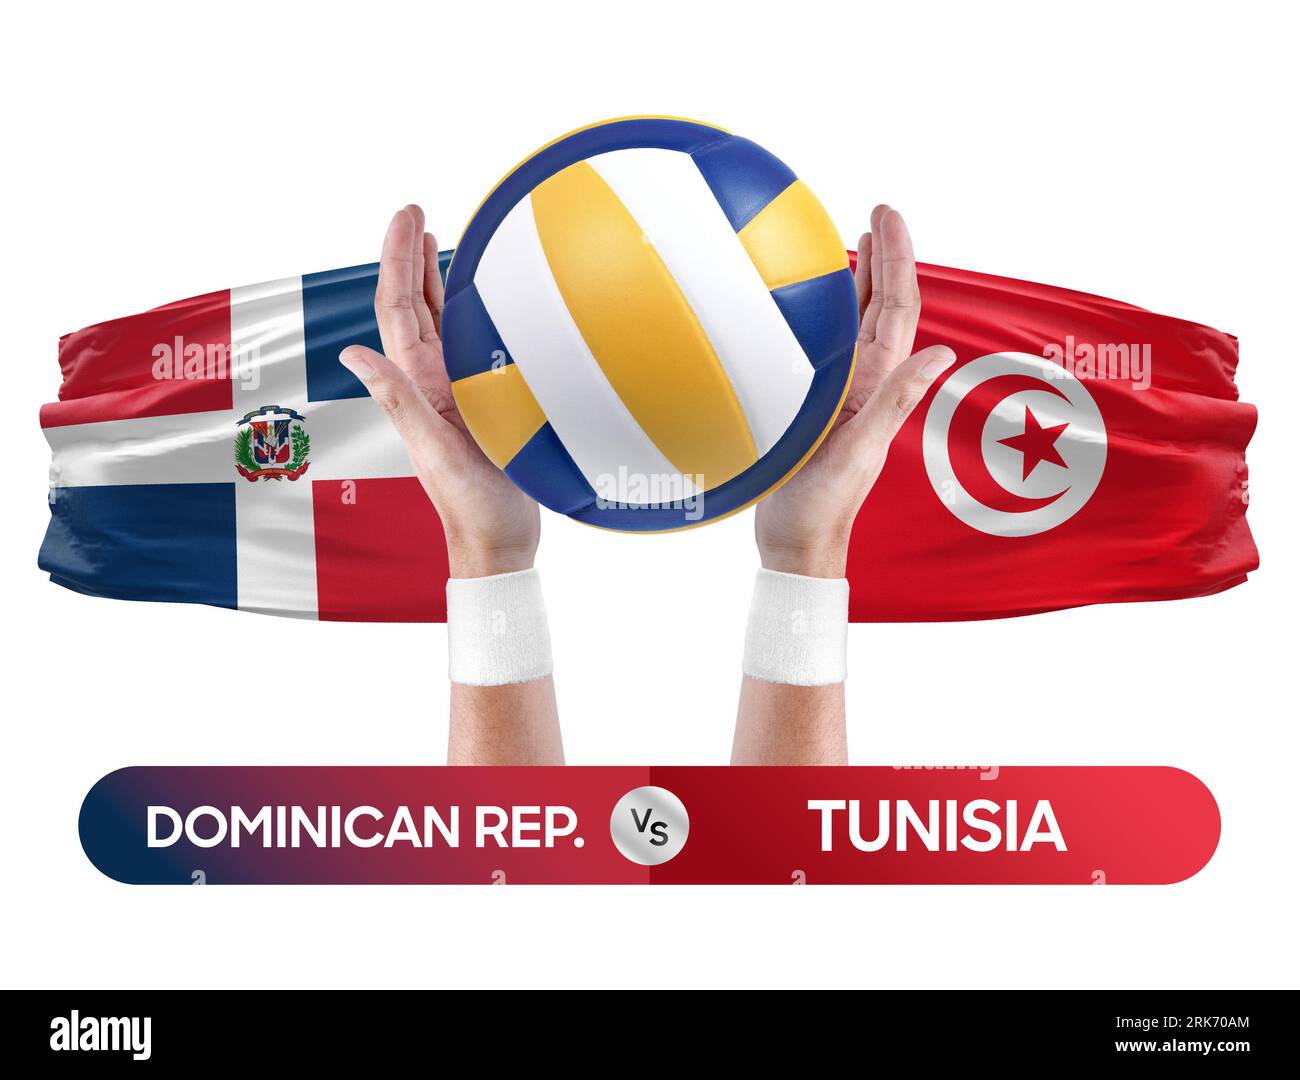 República Dominicana vs Túnez equipos nacionales voleibol voleibol bola partido concepto de competencia. Foto de stock